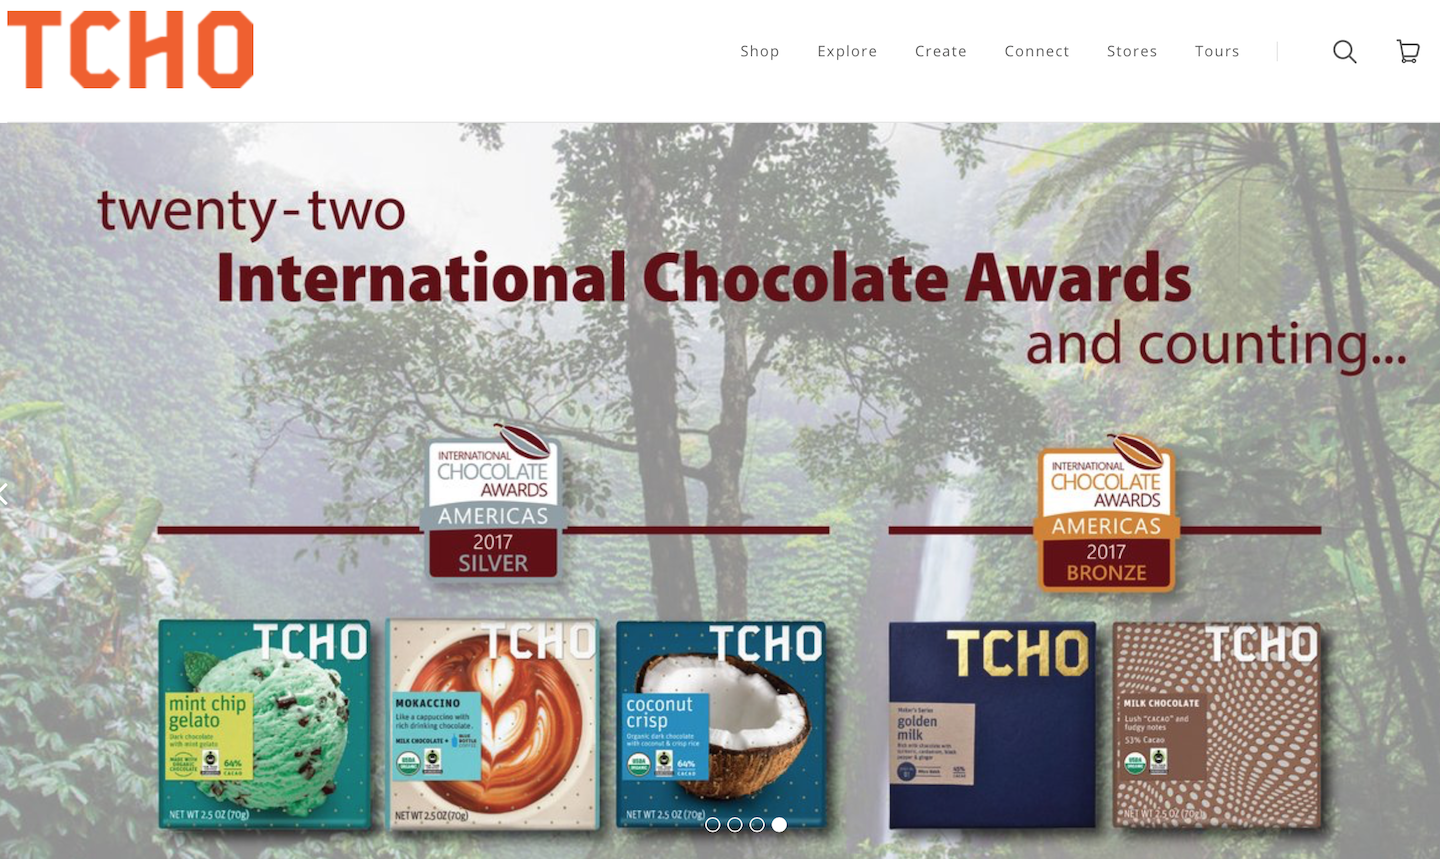 日本食品生产商江崎格力高收购美国高端手工巧克力品牌 TCHO Ventures